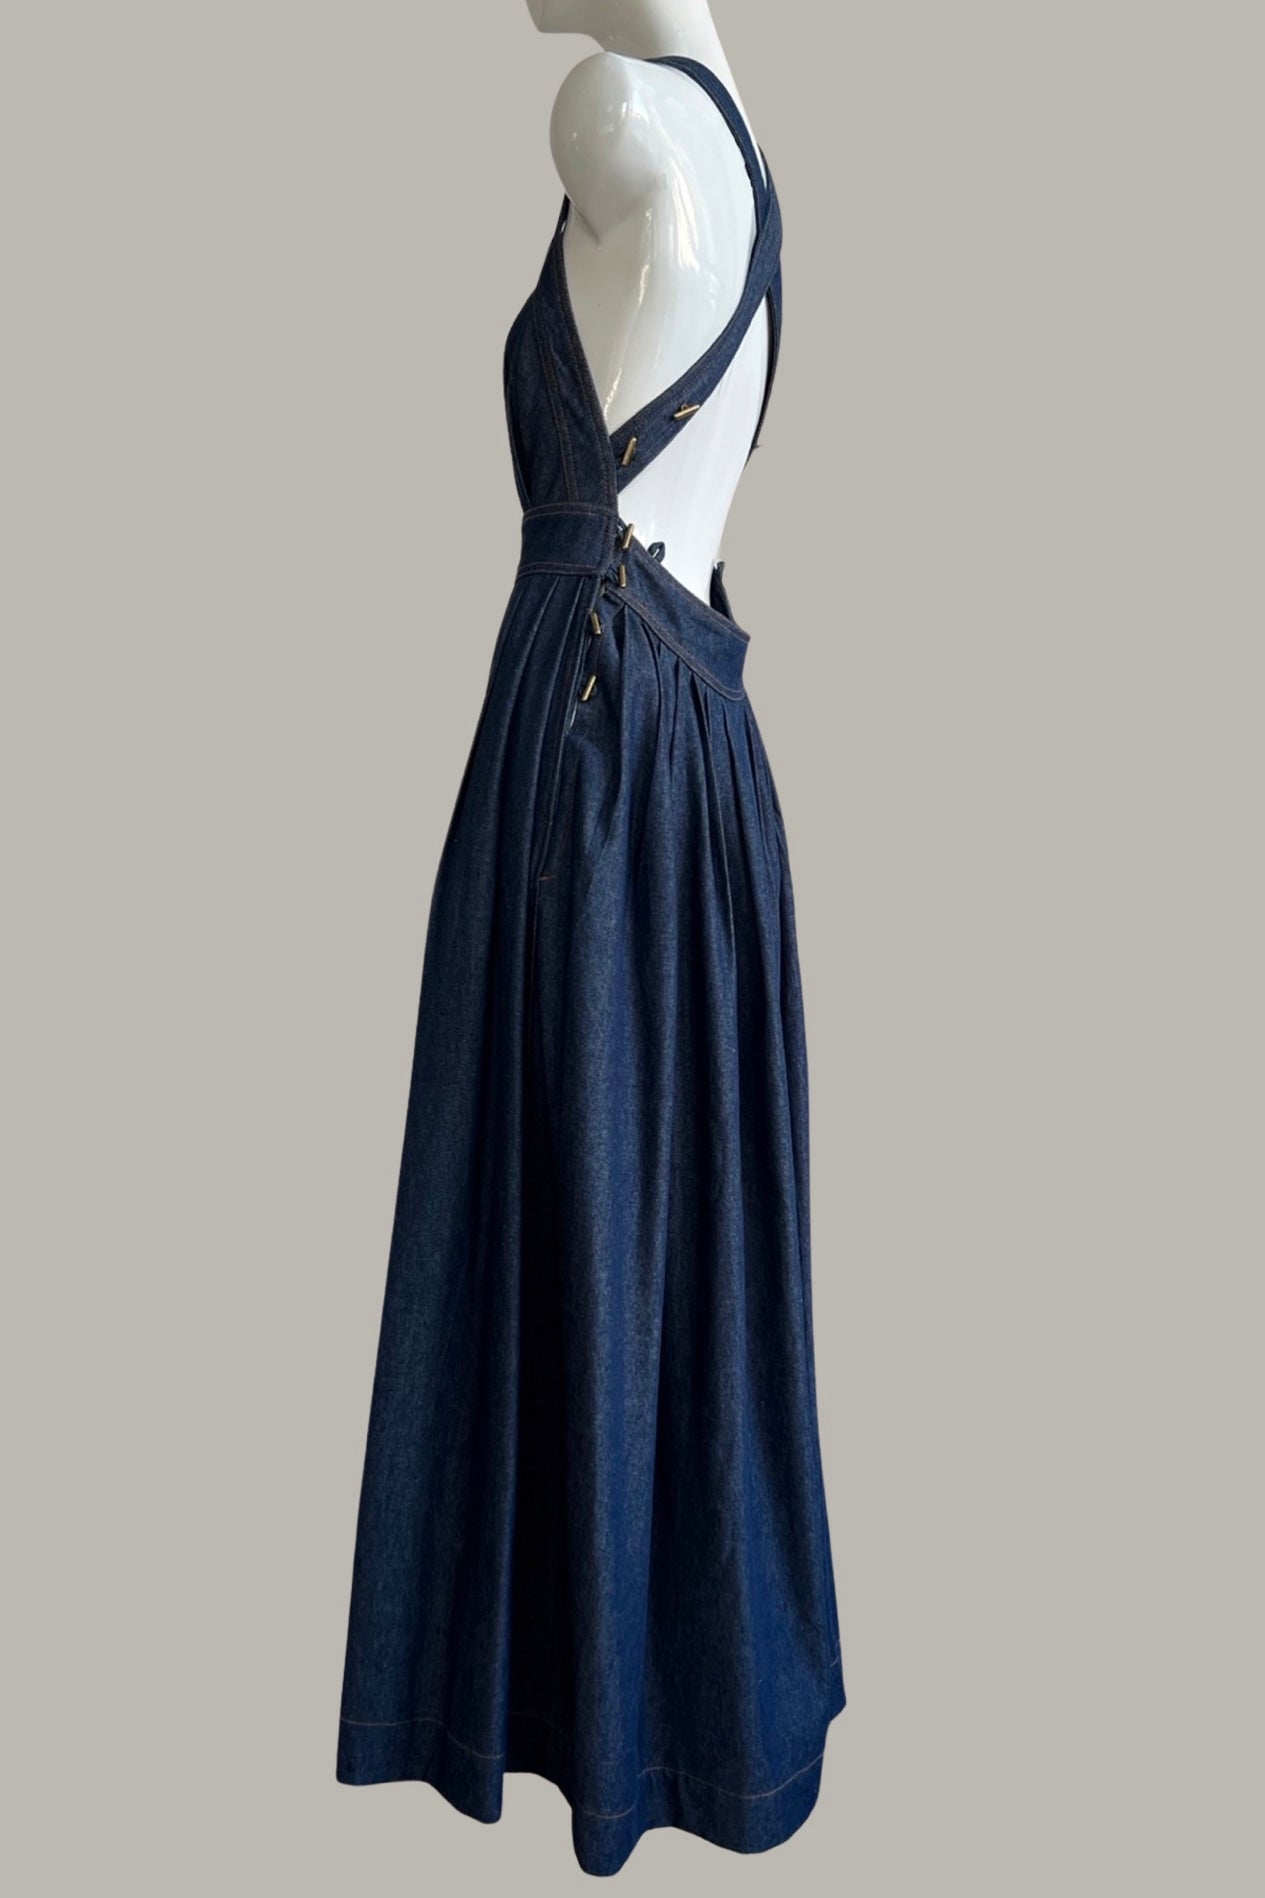 Traveling Pinafore Dress Long Version in Indigo Denim {Made to Order}